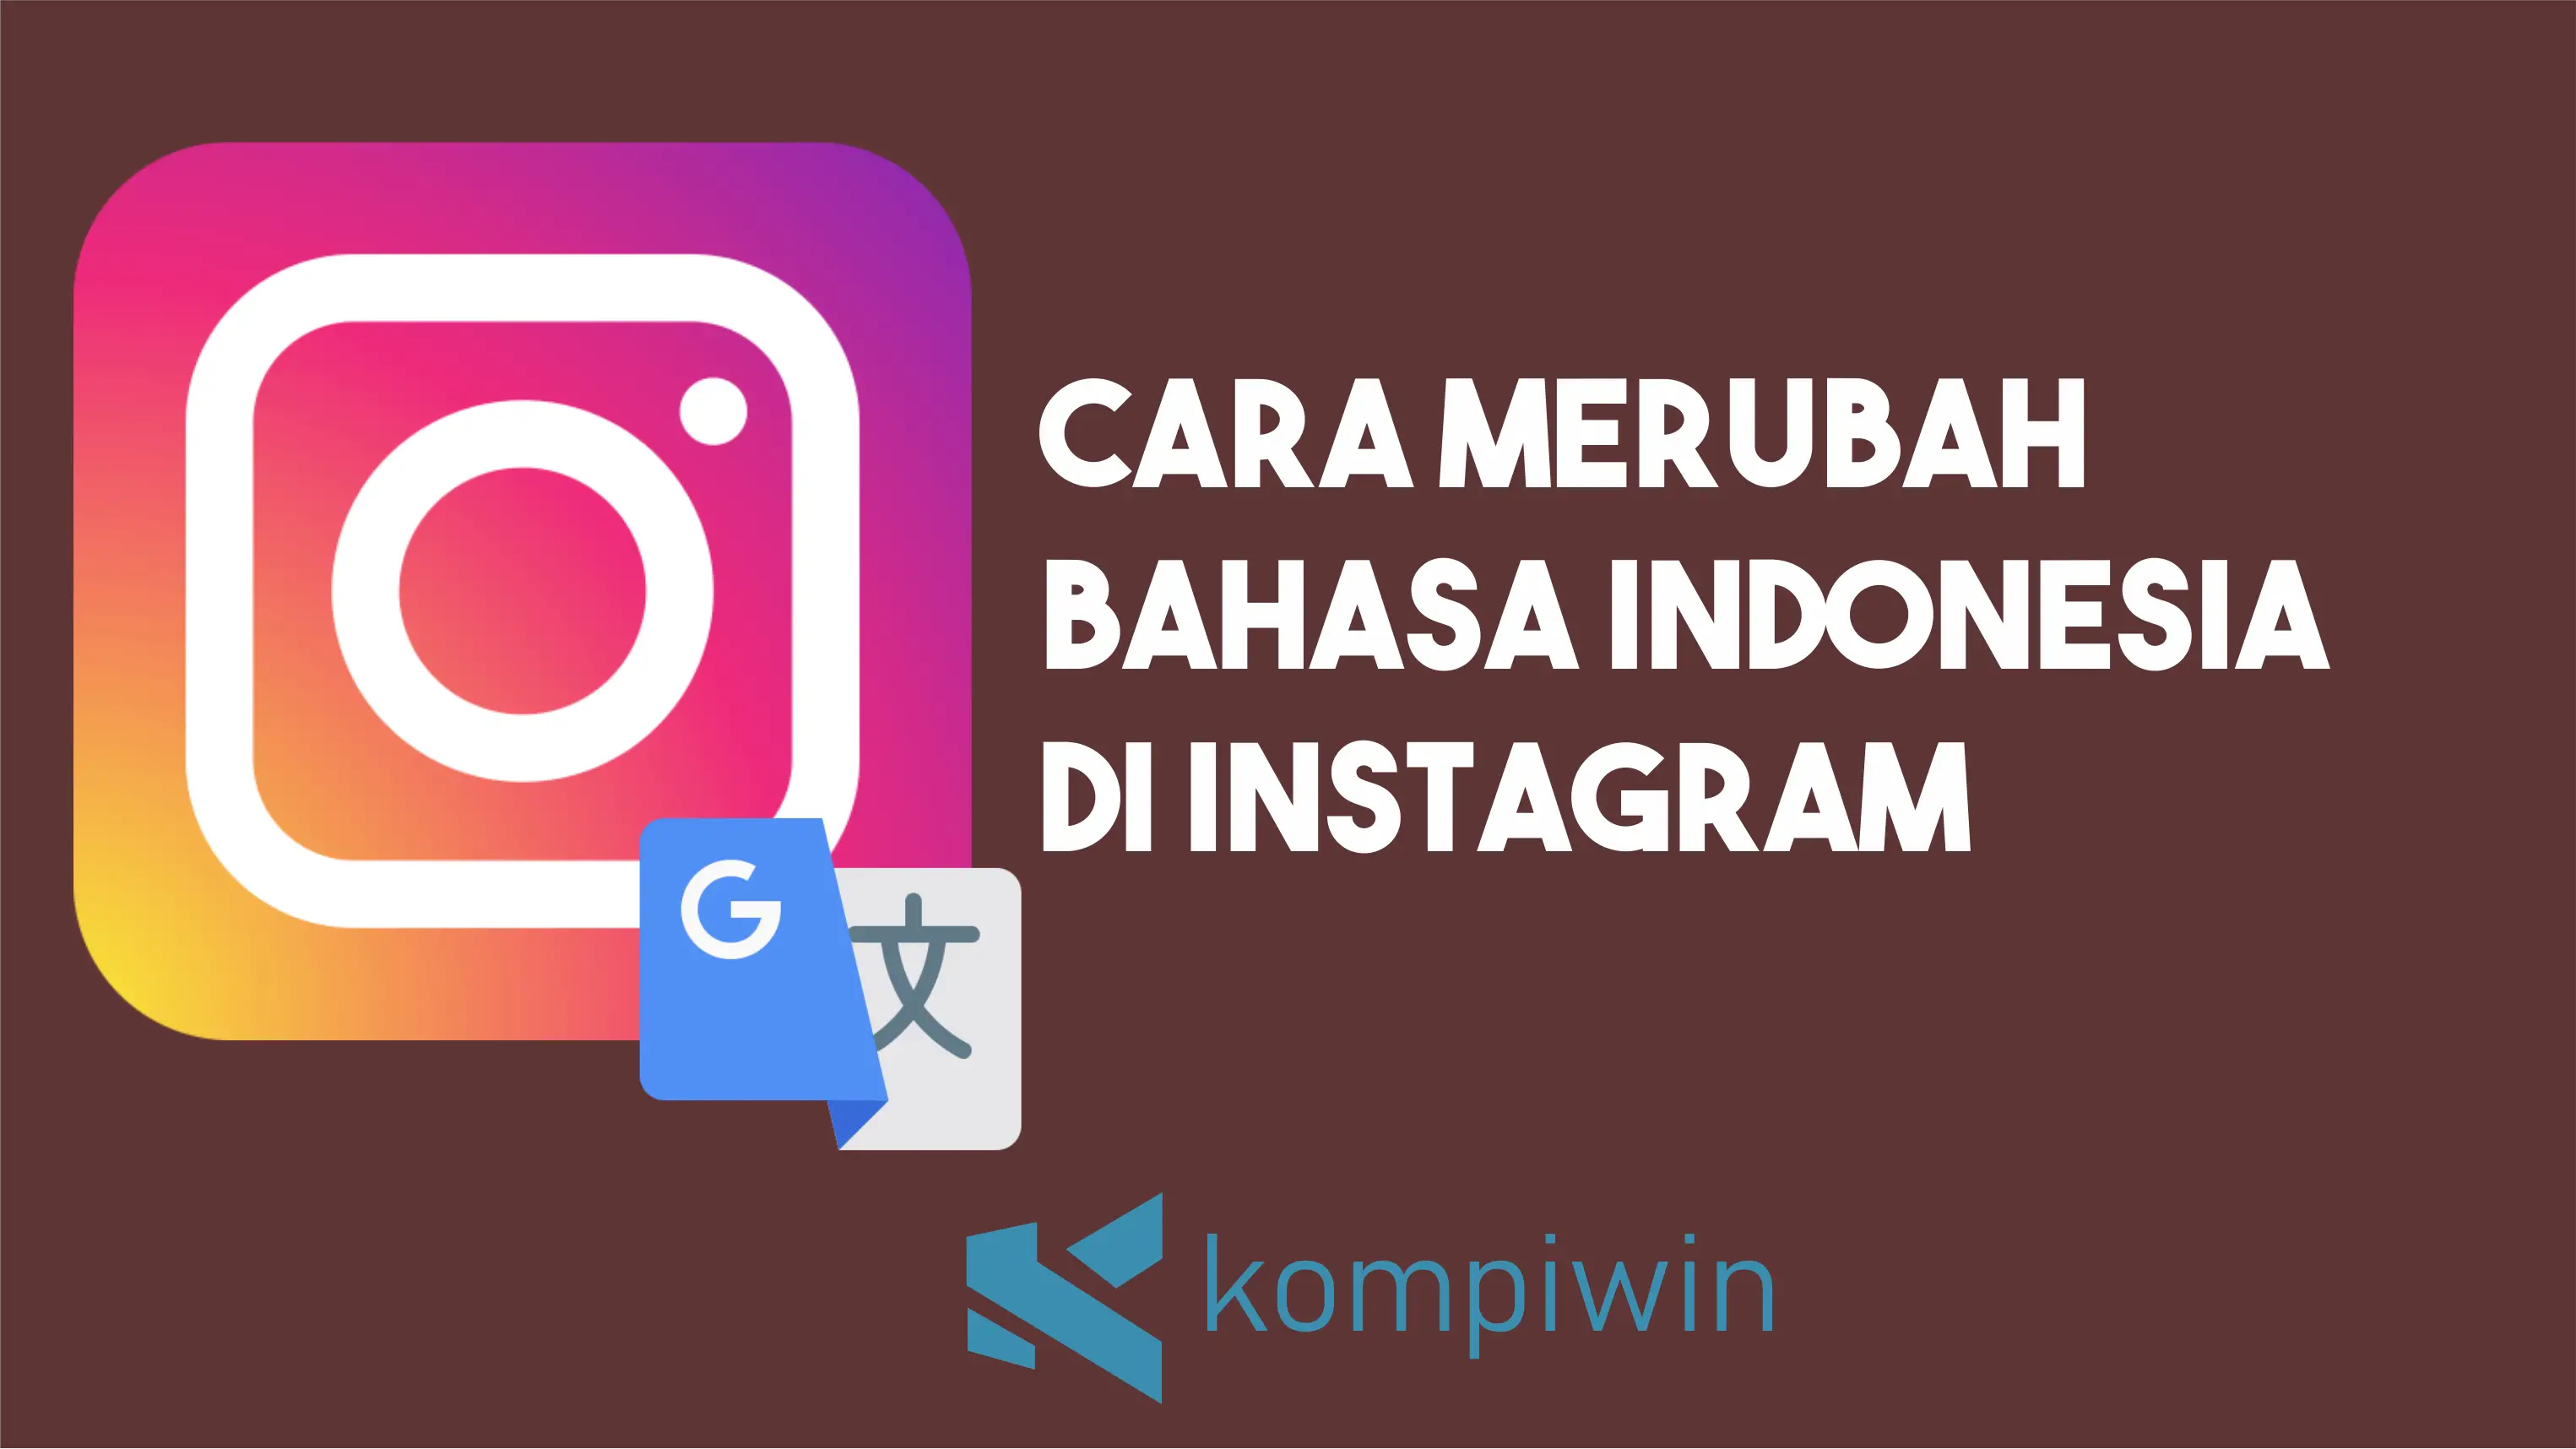 Cara Merubah Bahasa Indonesia Di Instagram